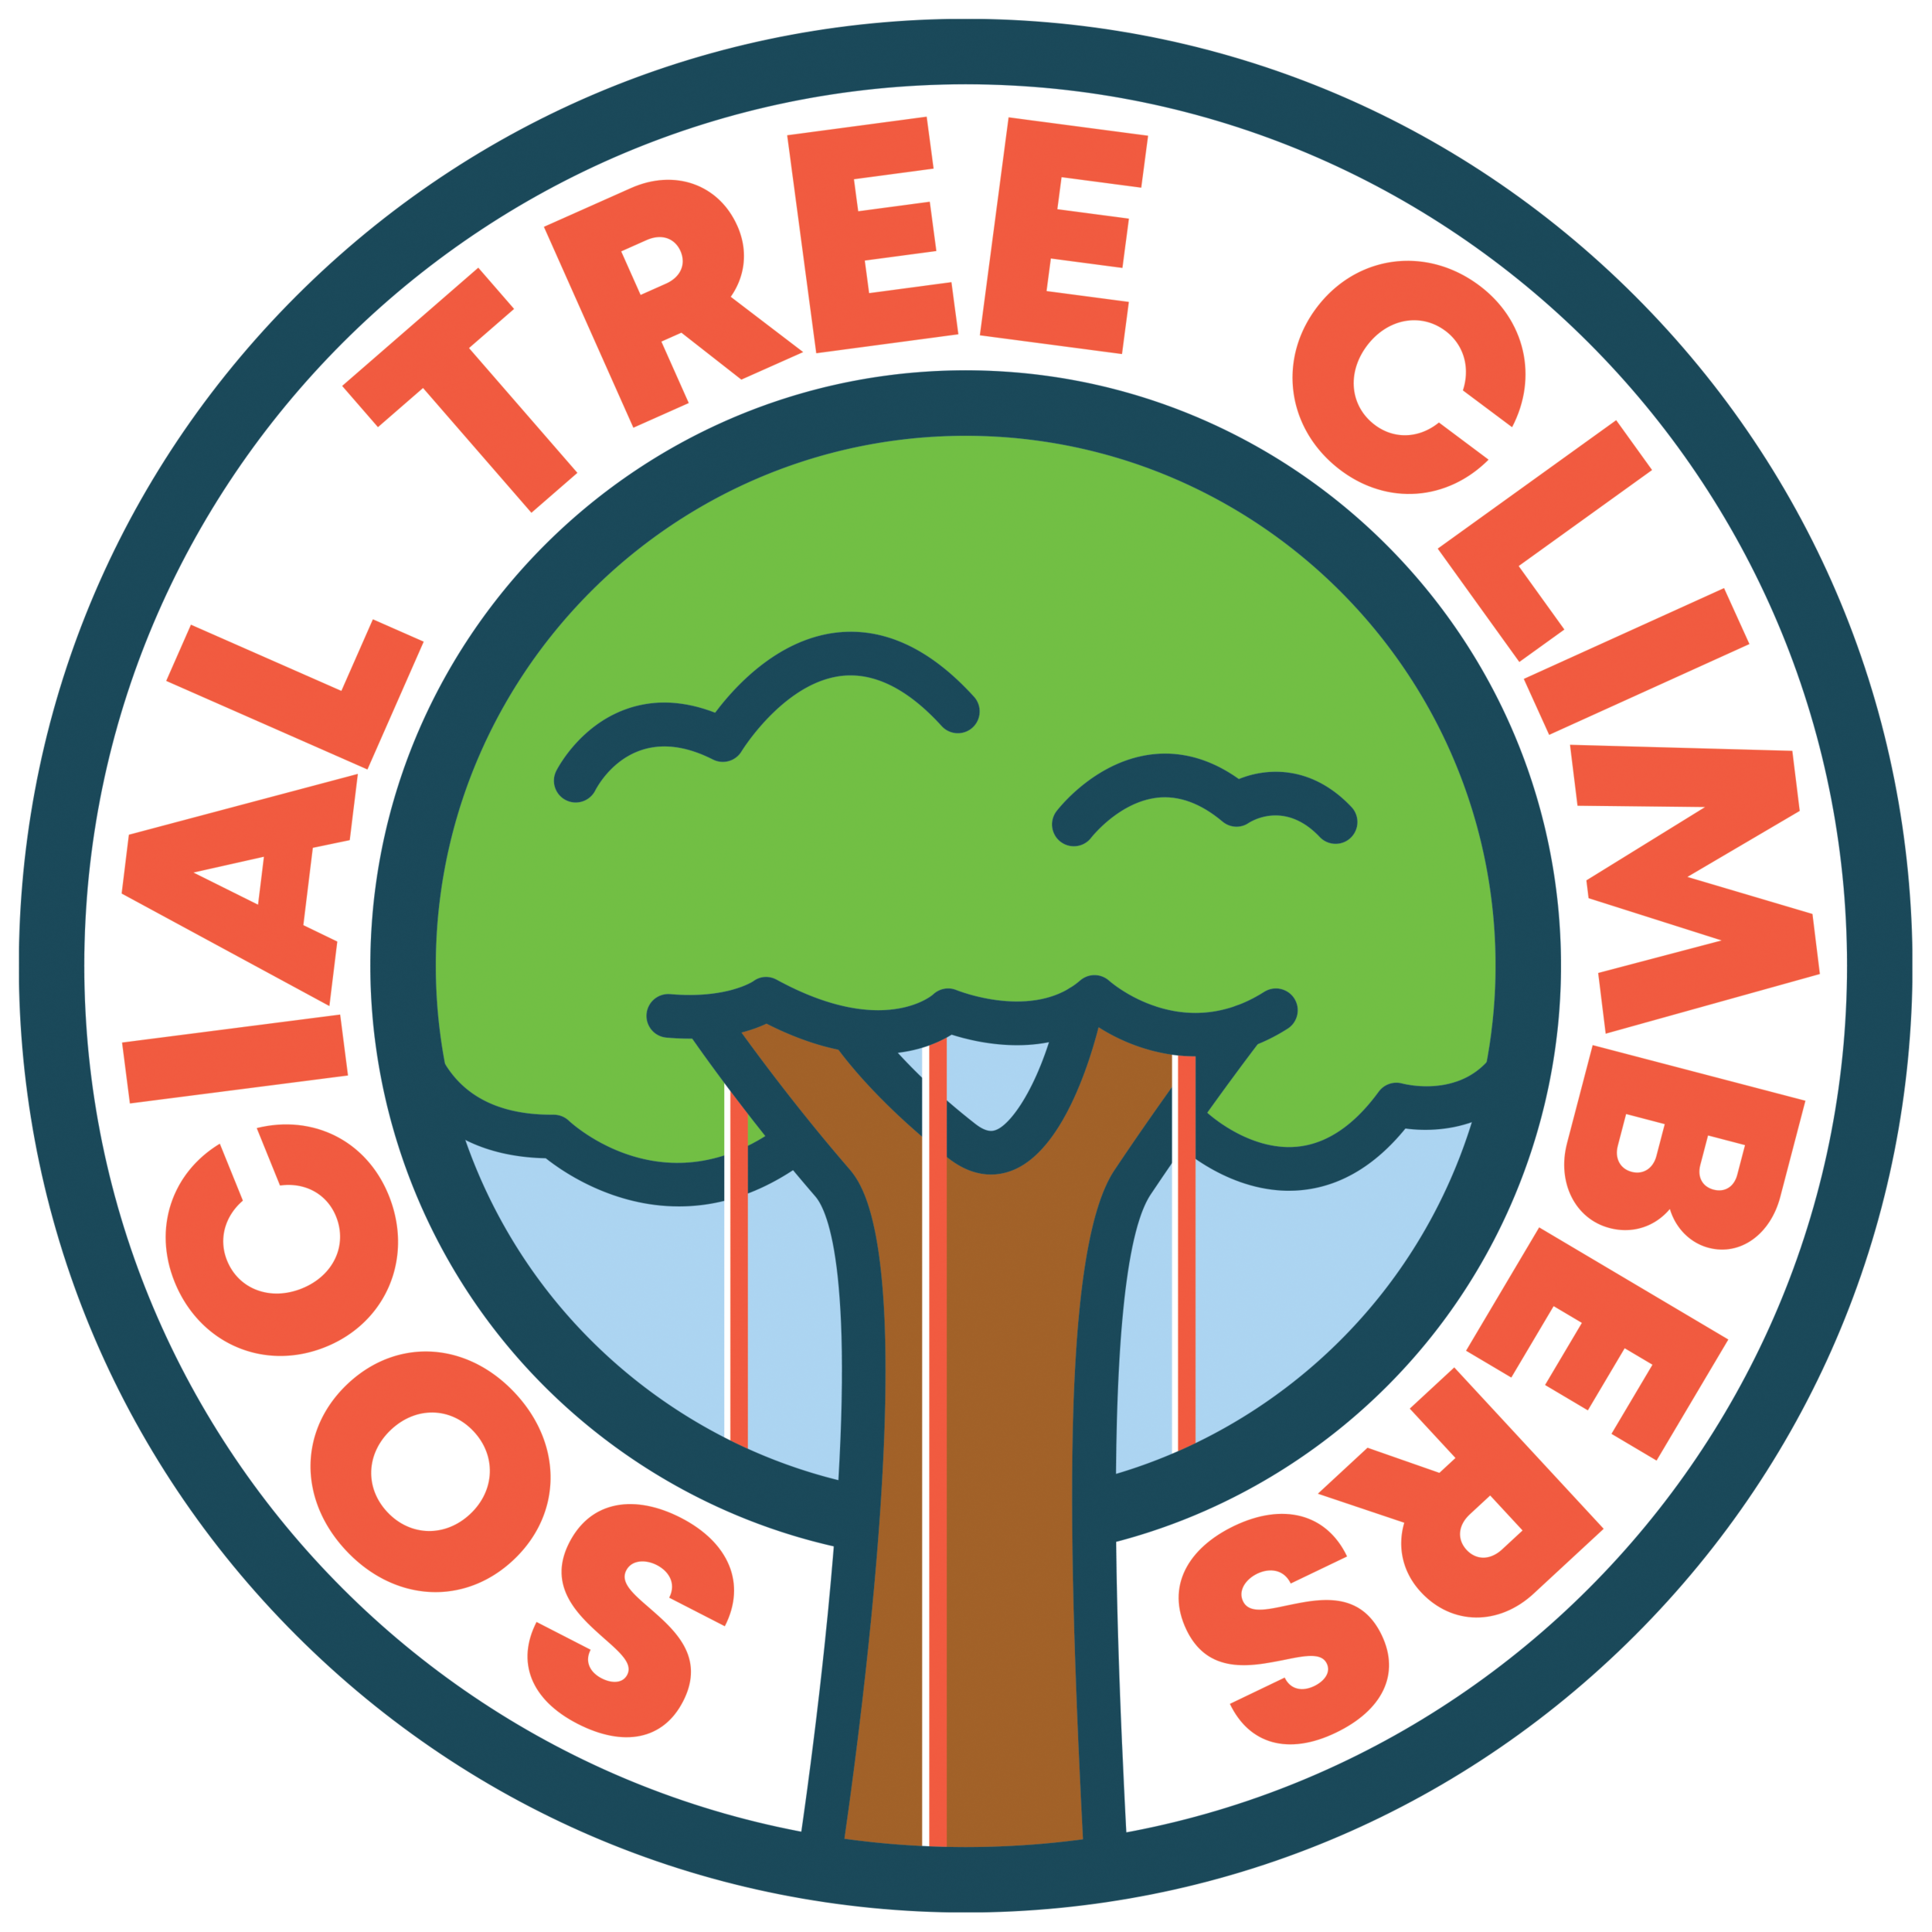 SOCIAL TREE CLIMBERS